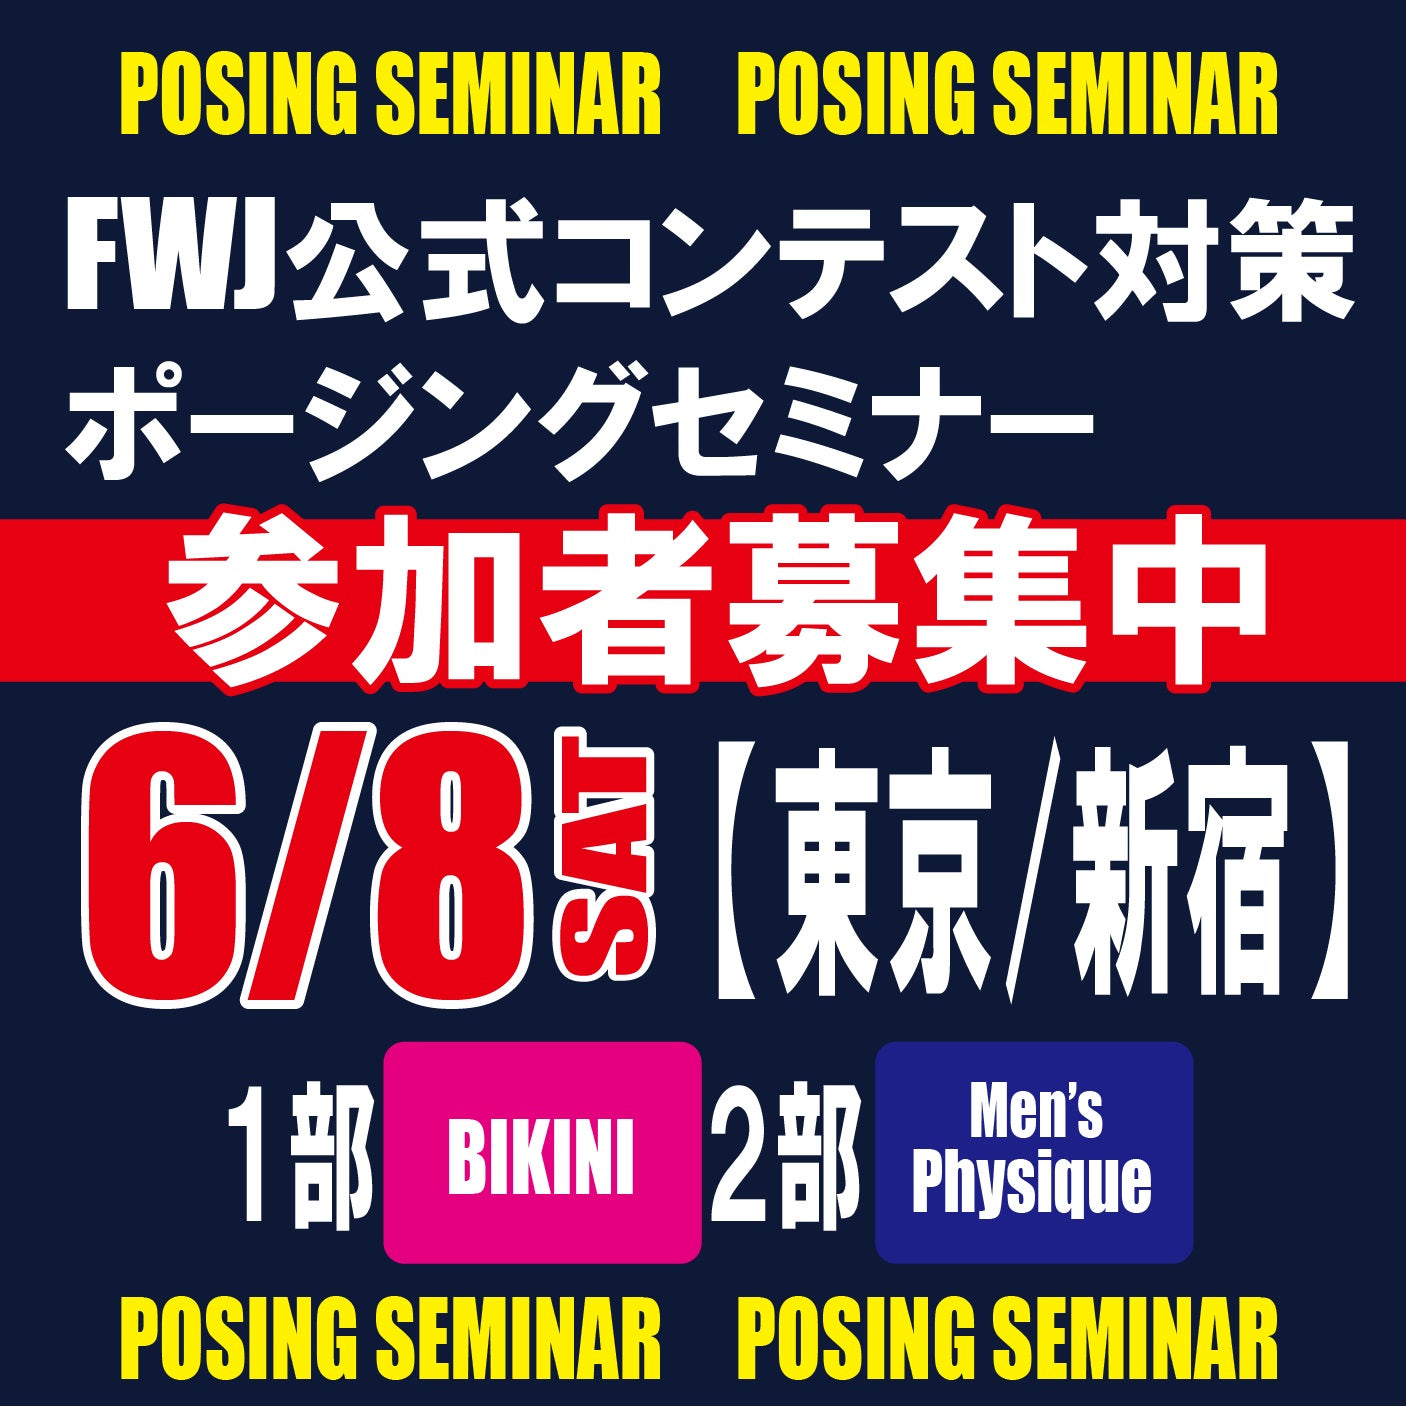 6/8 東京 FWJ公式コンテスト対策ポージングセミナー 1部/ビキニ・2部/メンズフィジーク